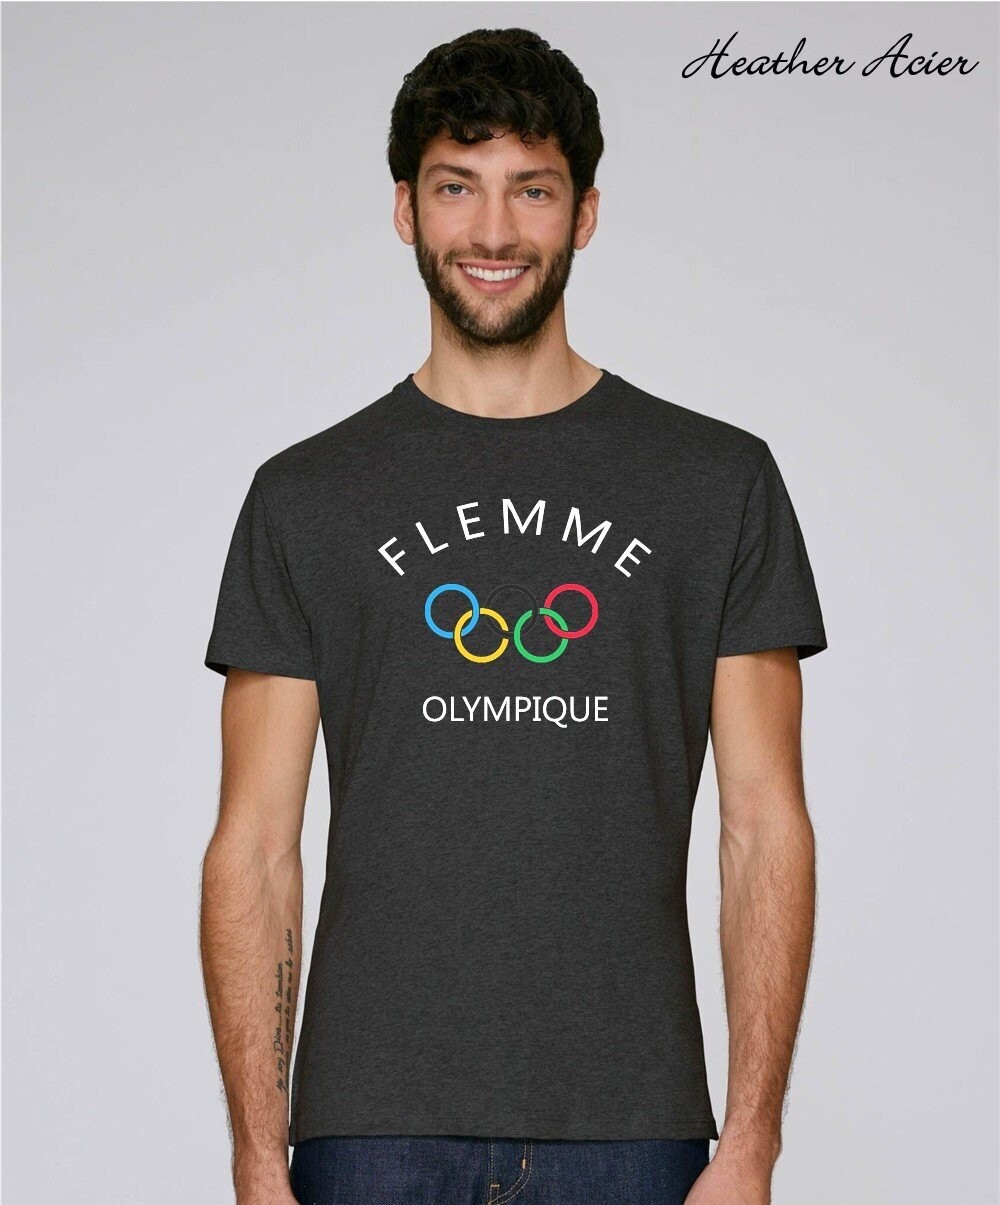 Flemme Olympique